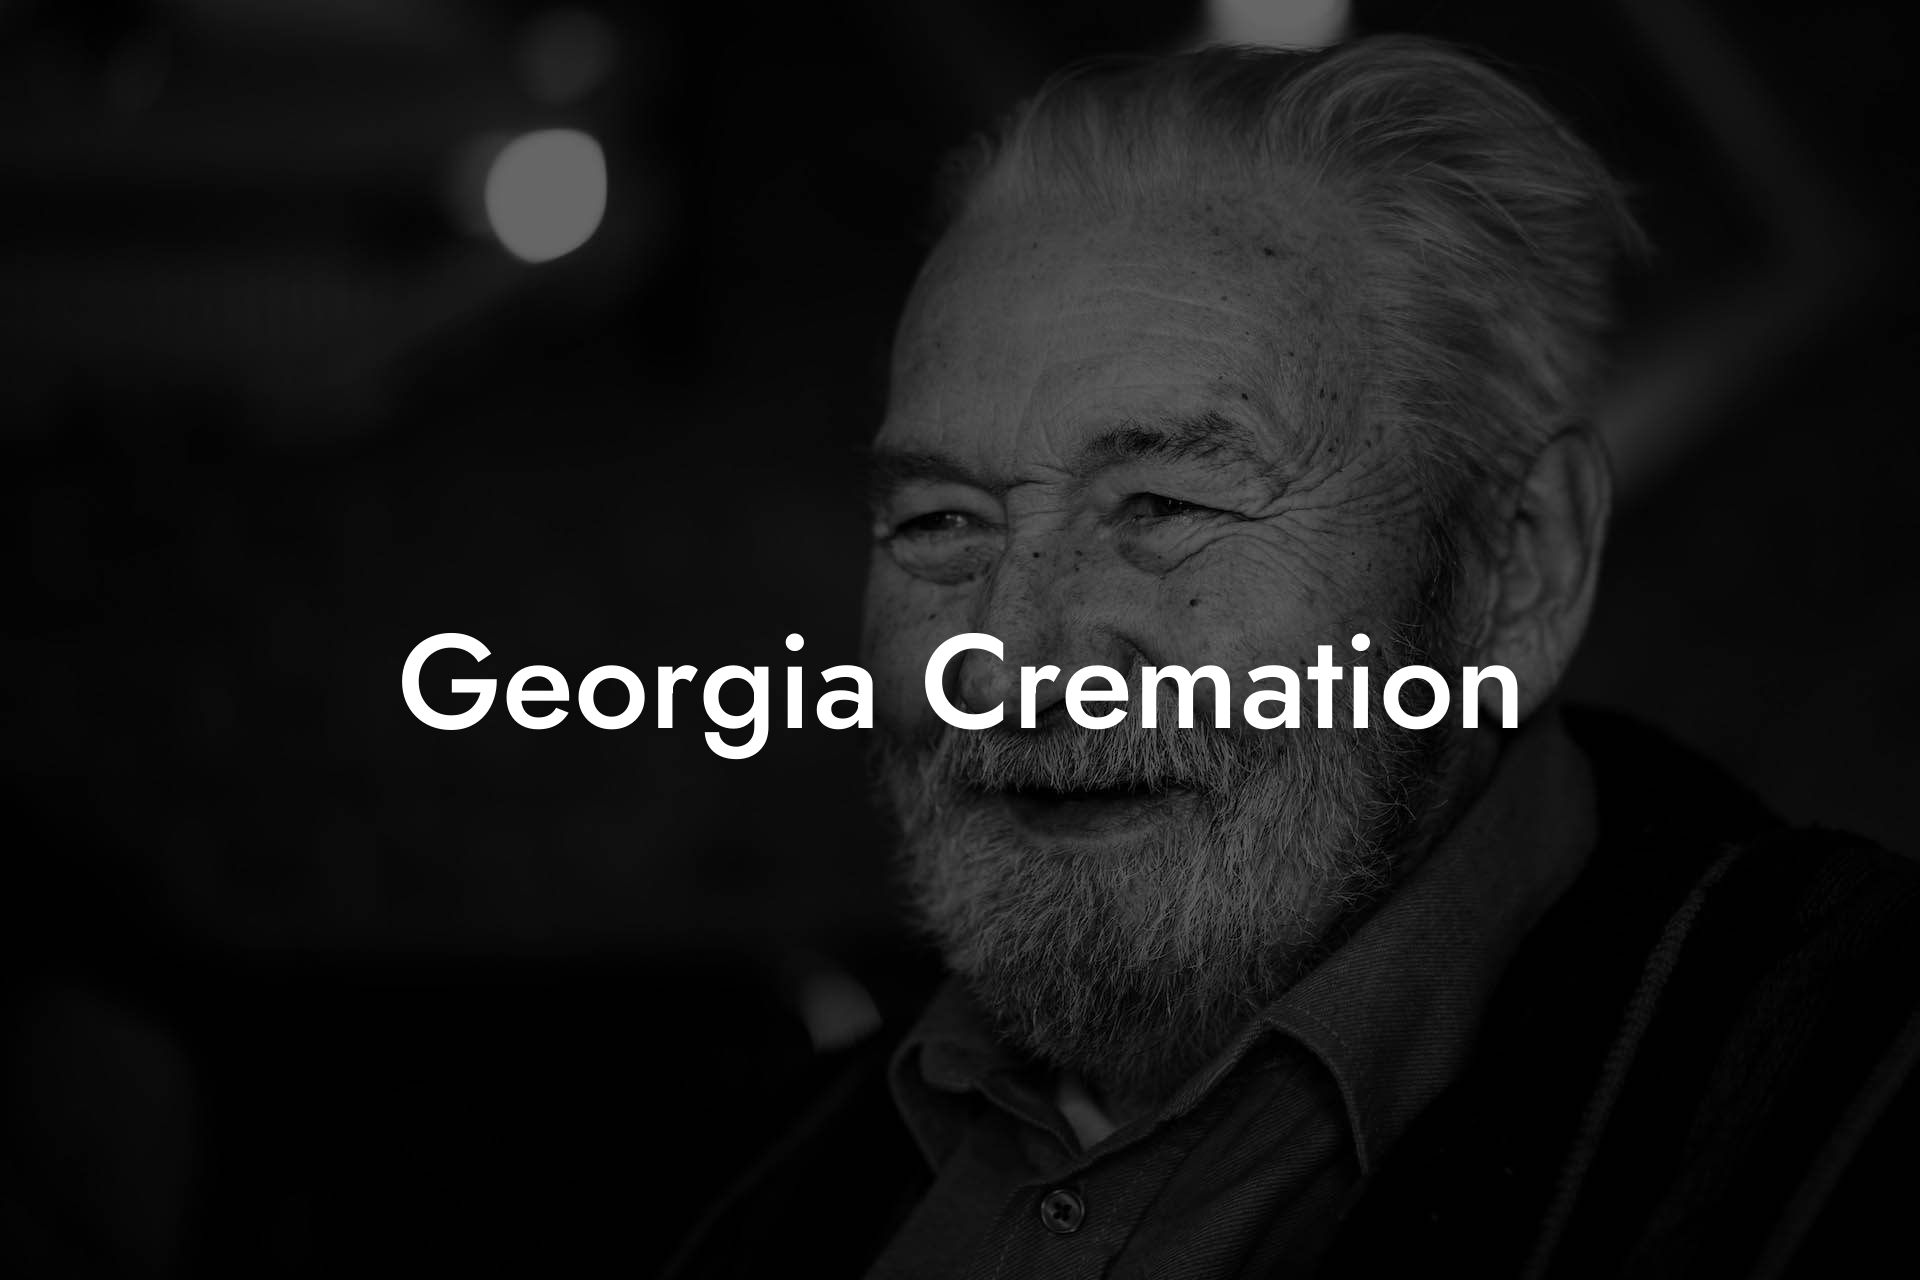 Georgia Cremation